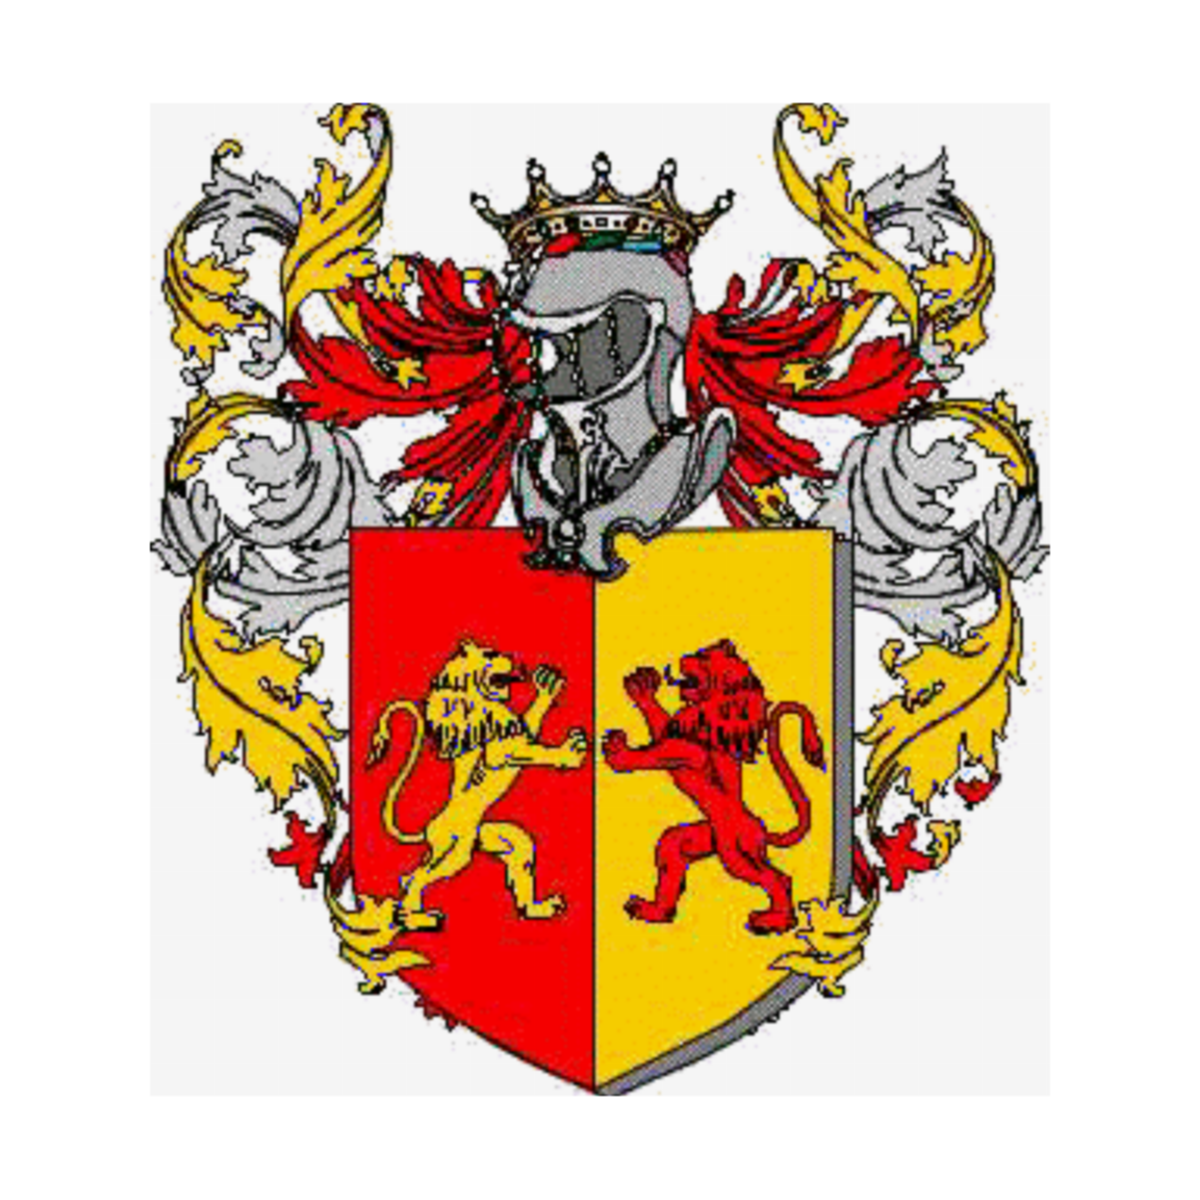 Wappen der Familie Sancini